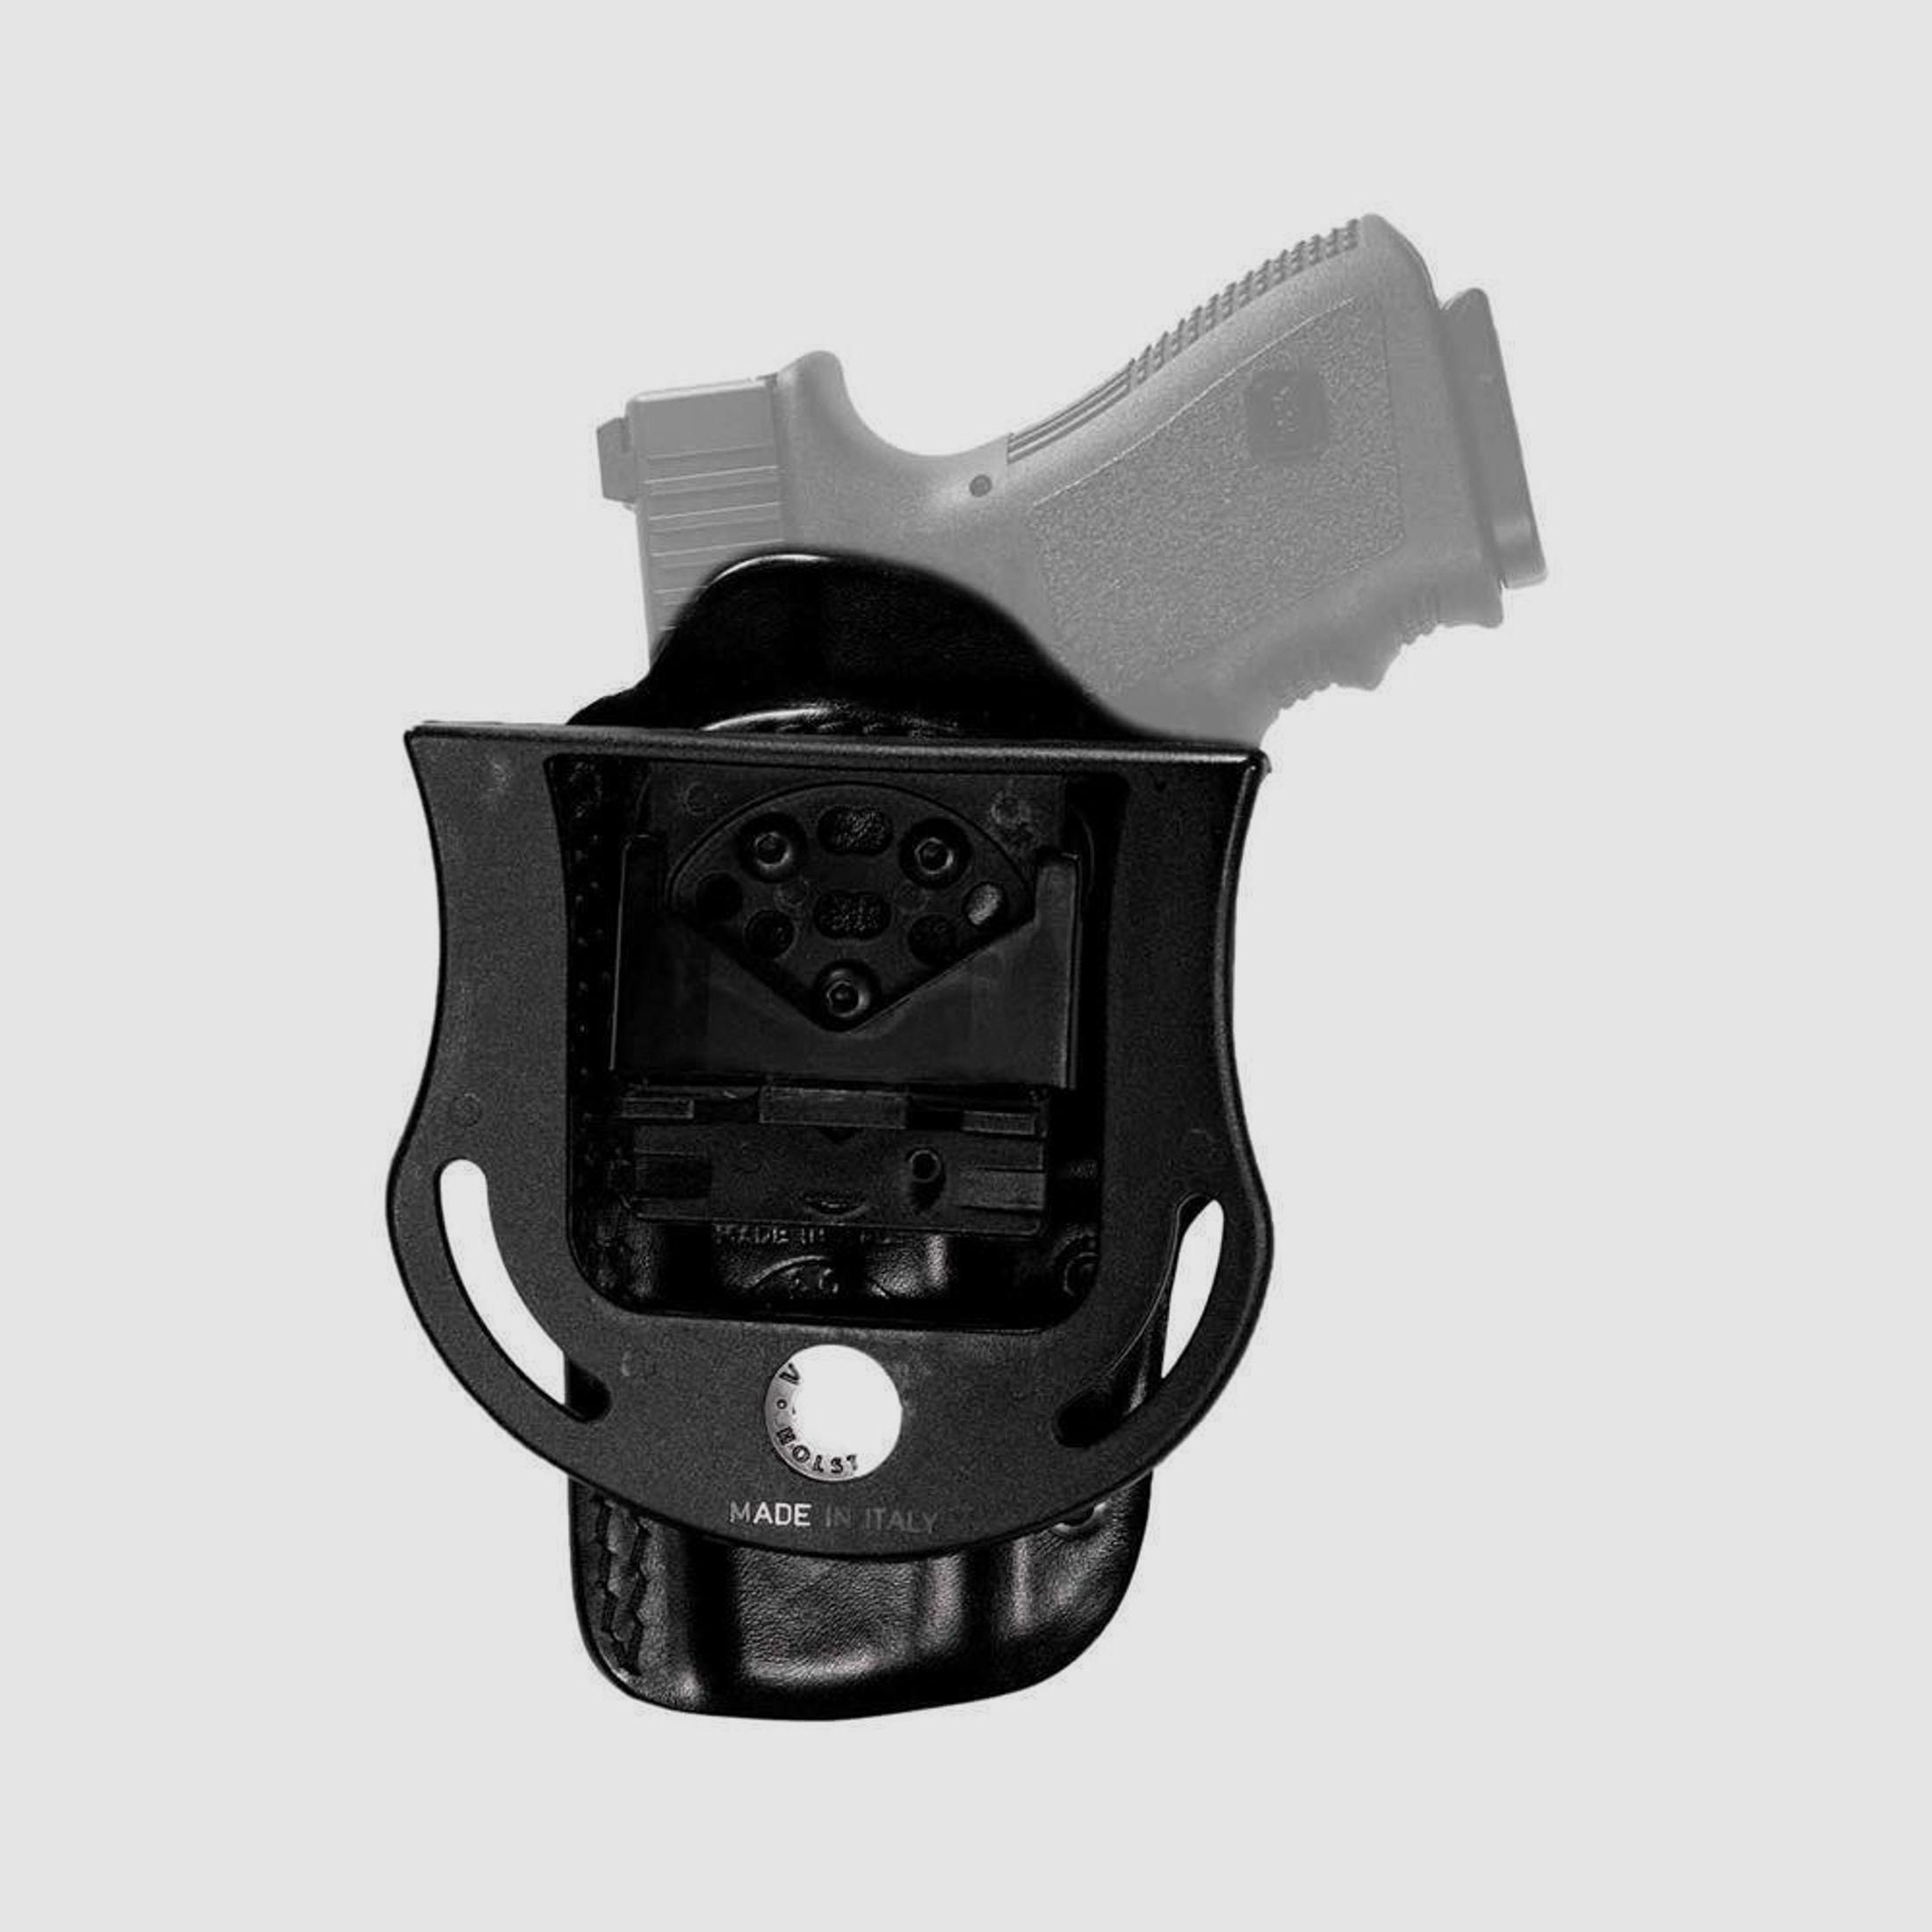 SPEED MASTER Gürtelholster mit Paddelhalterung Glock 29/30/36, H&K USP Compact/P2000/P30 Linkshänder